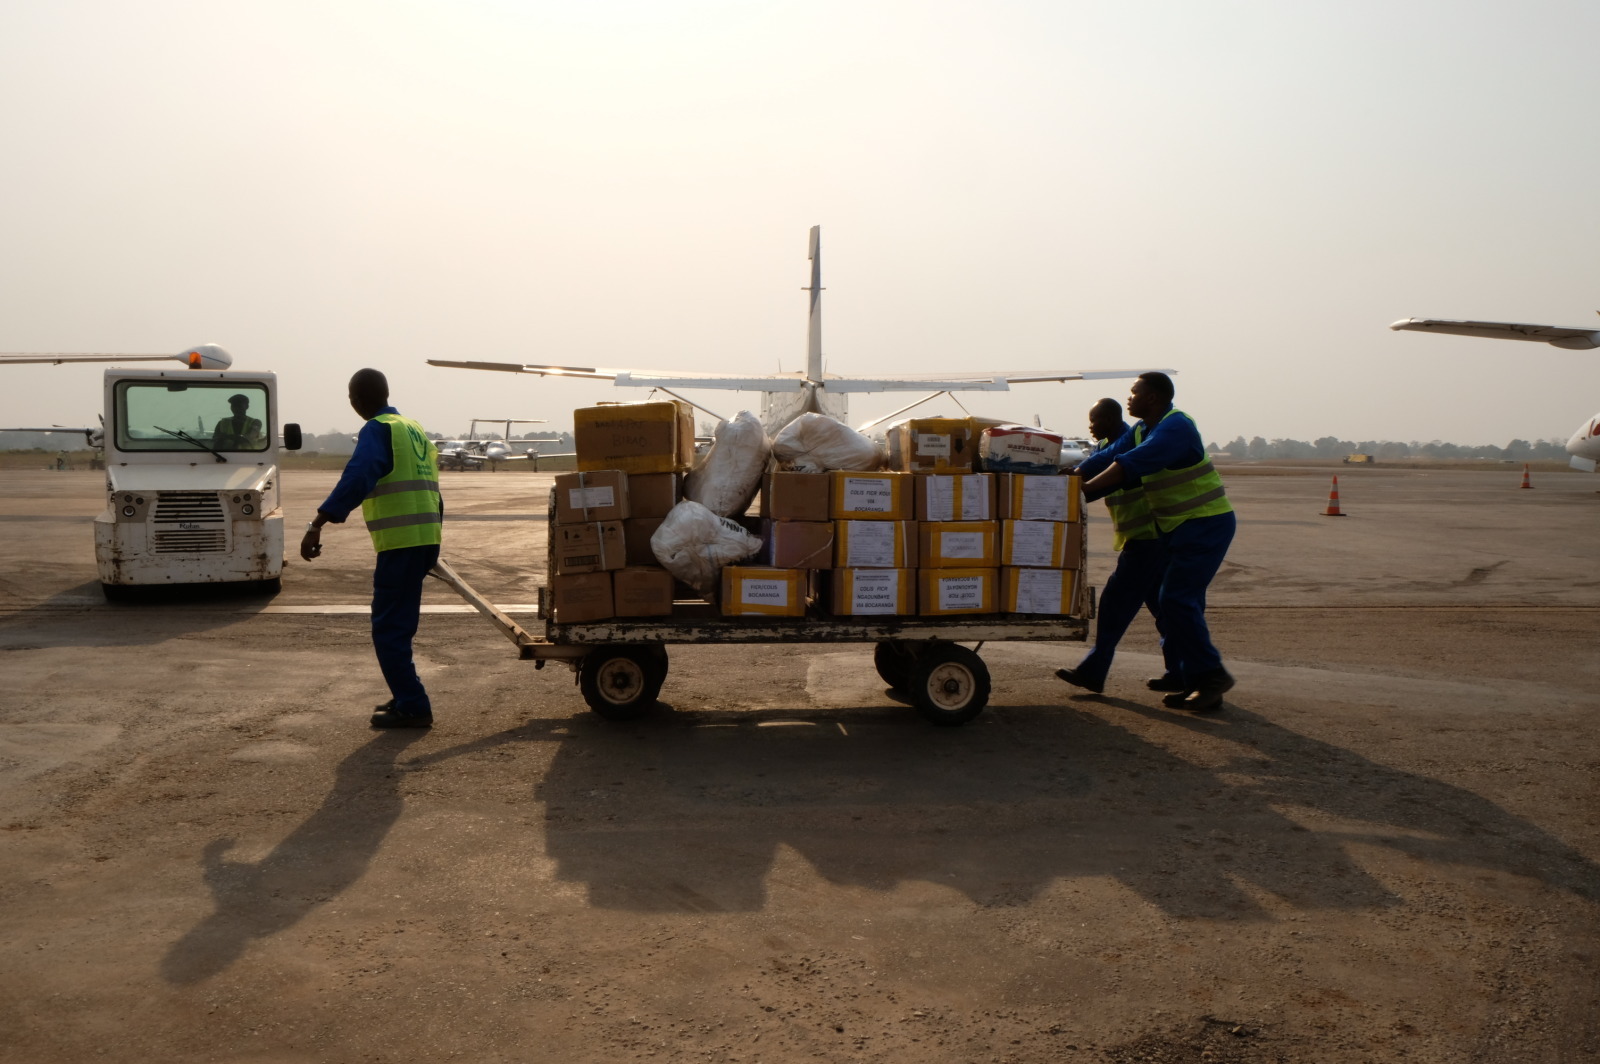 Des agents de HI préparent un chargement à l'aéroport international de Bangui	